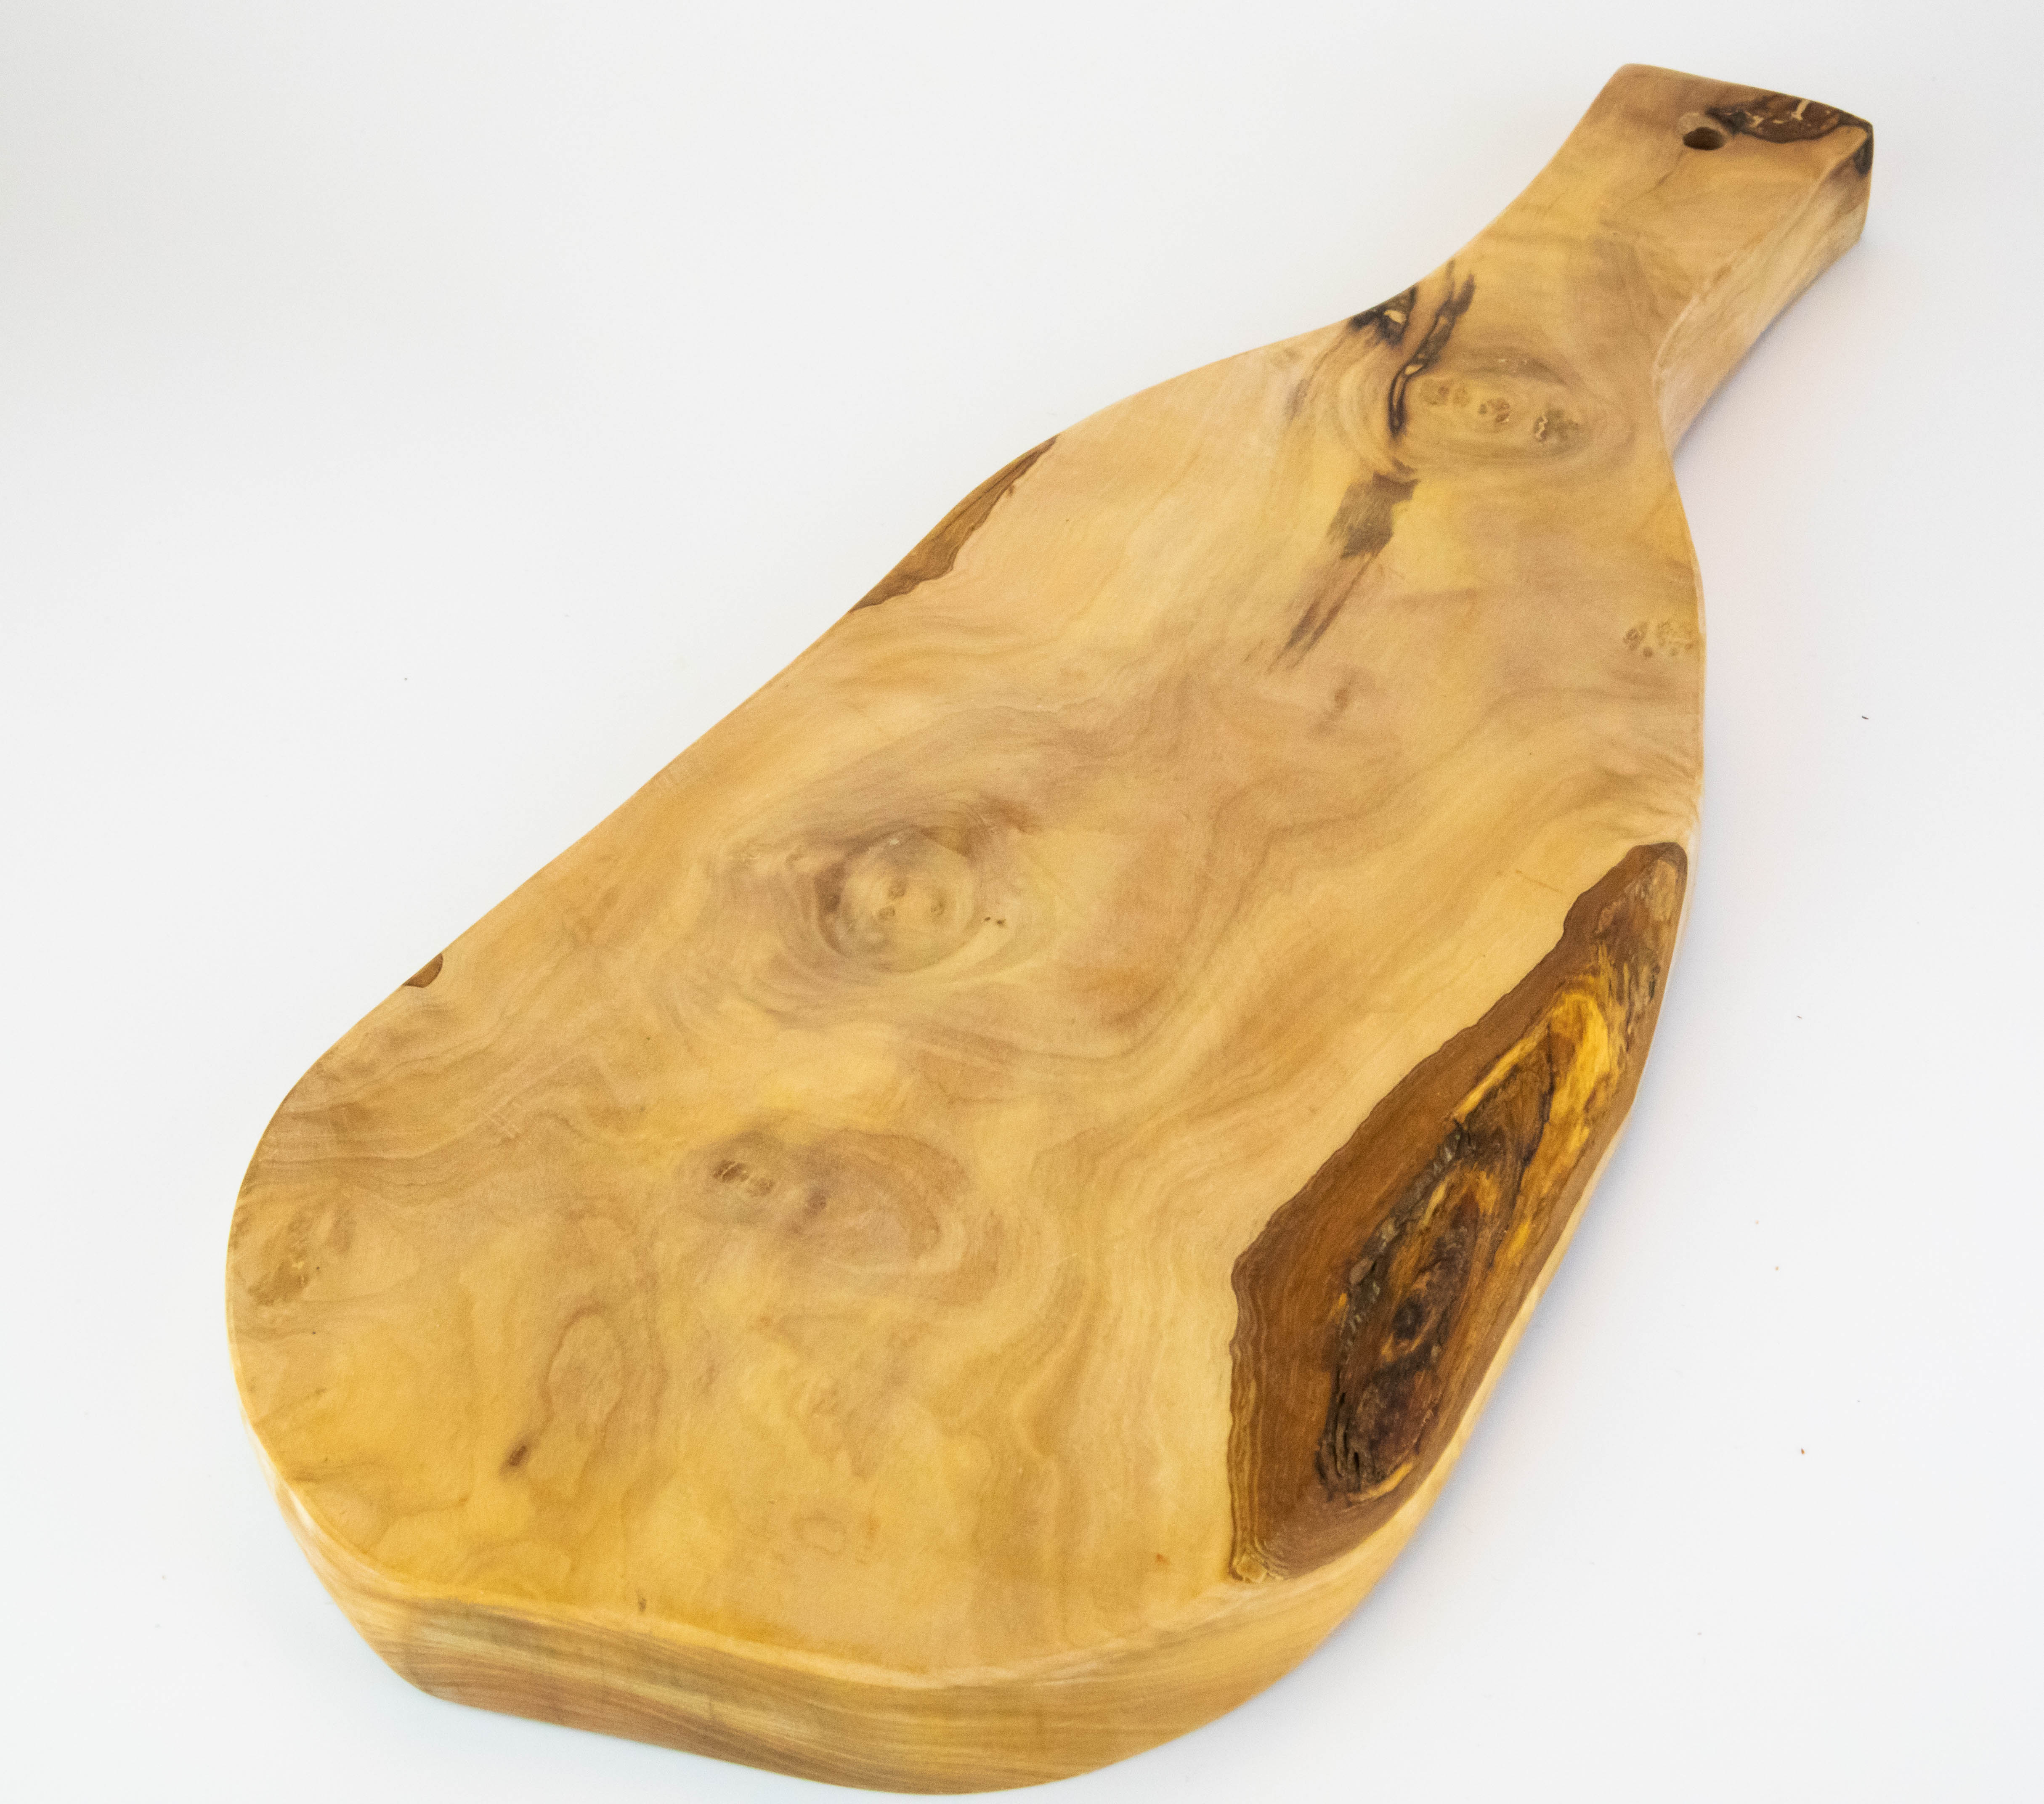 Planche de service rustique avec poignée en bois d'olivier de 40-45 cm